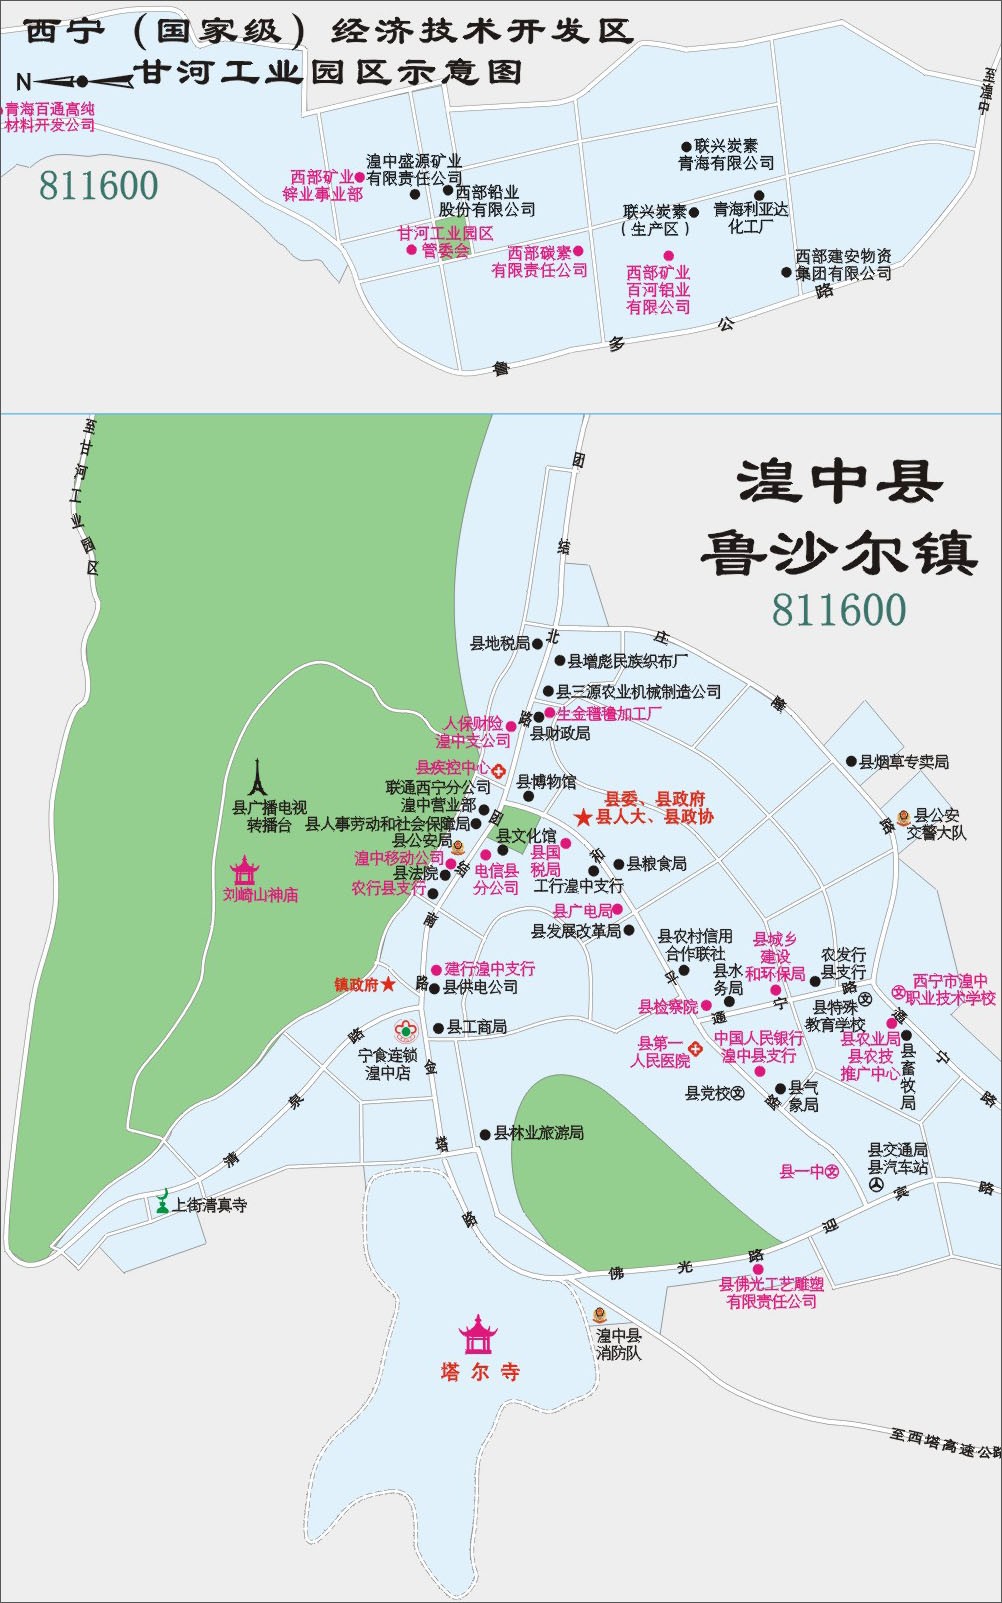 地图 青海 西宁市  湟中县街区图  栏目导航: 西宁市  海东地区